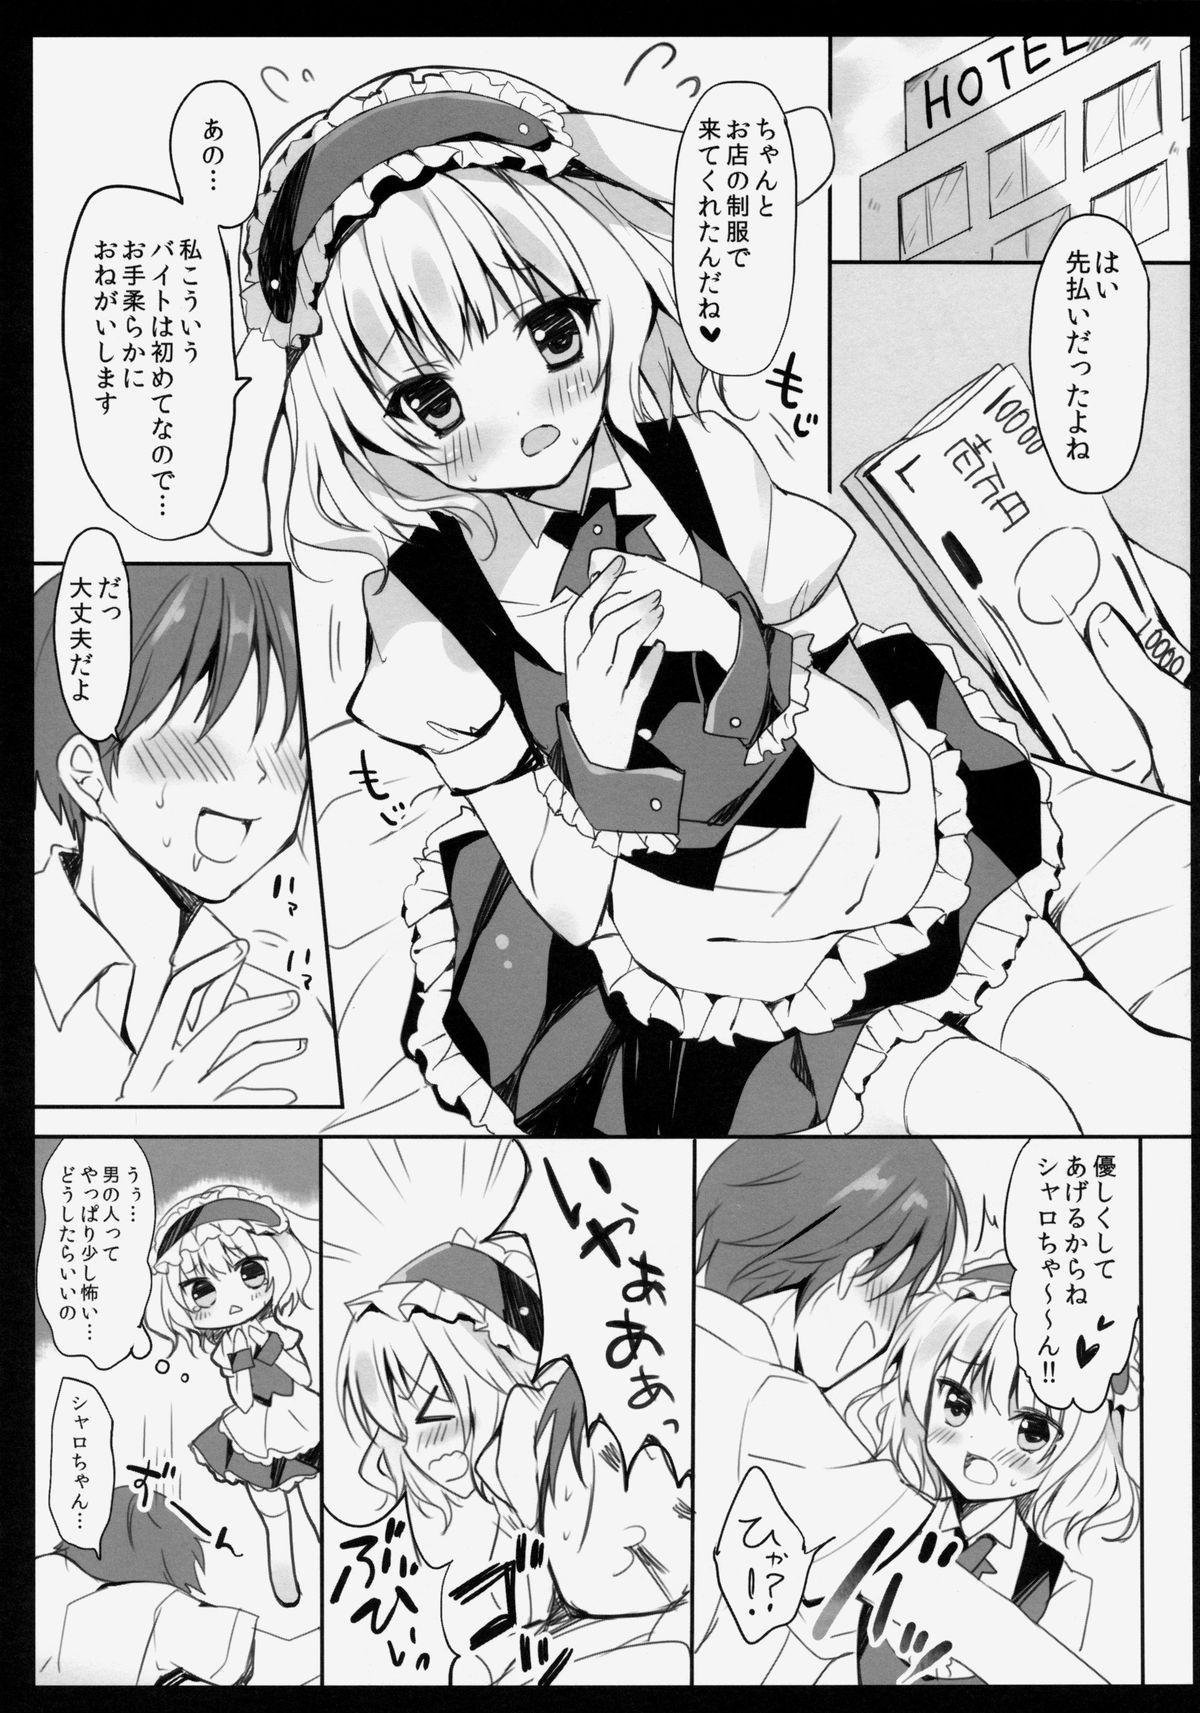 Adorable Gochuumon wa Sharo-chan desu ka? - Gochuumon wa usagi desu ka Desperate - Page 4